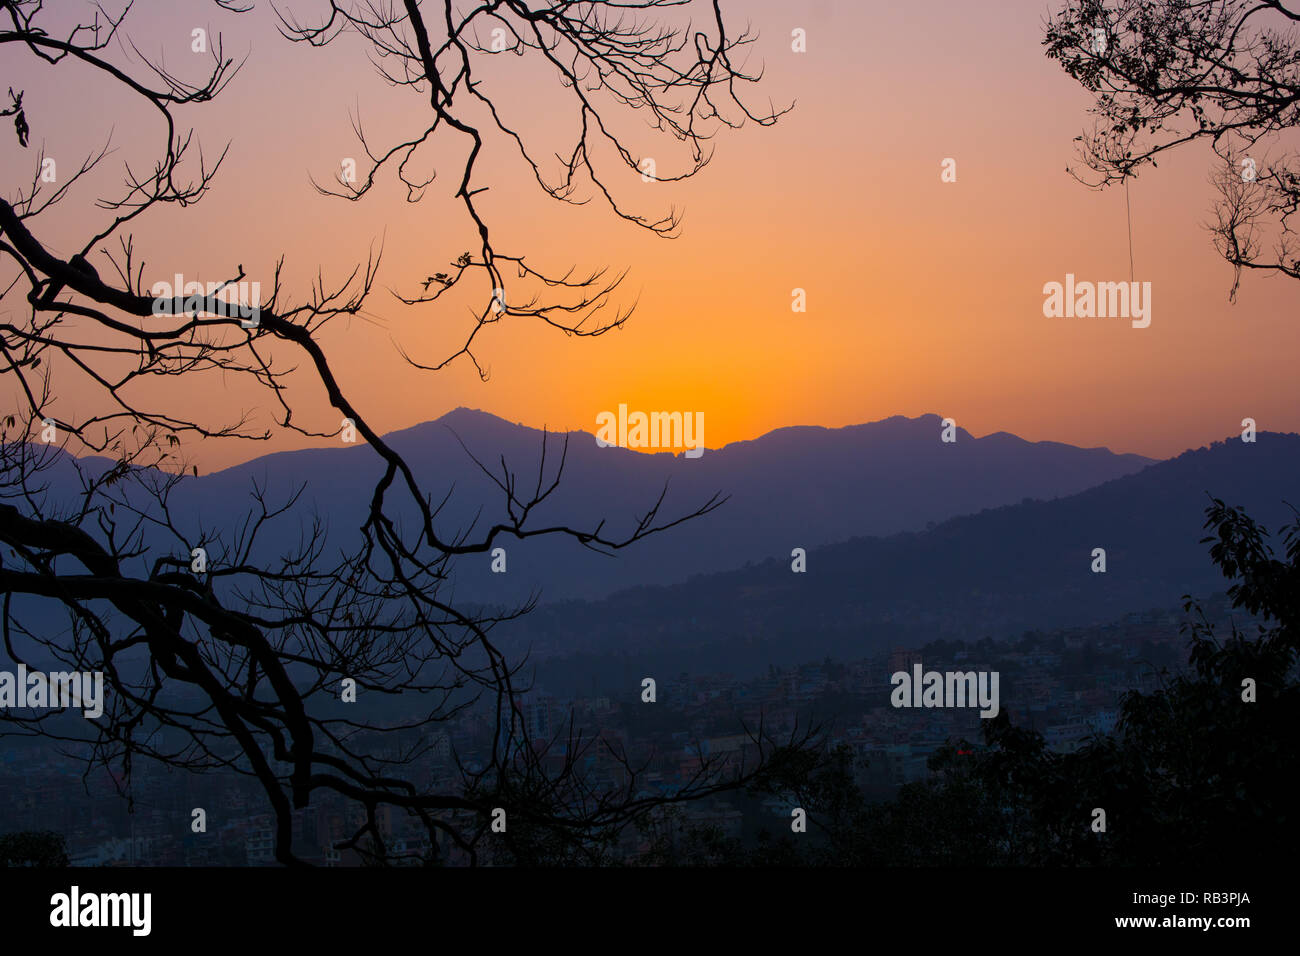 Vue d'un coucher du soleil dans un cadre d'arbres pour signifier un concept de tourisme Banque D'Images